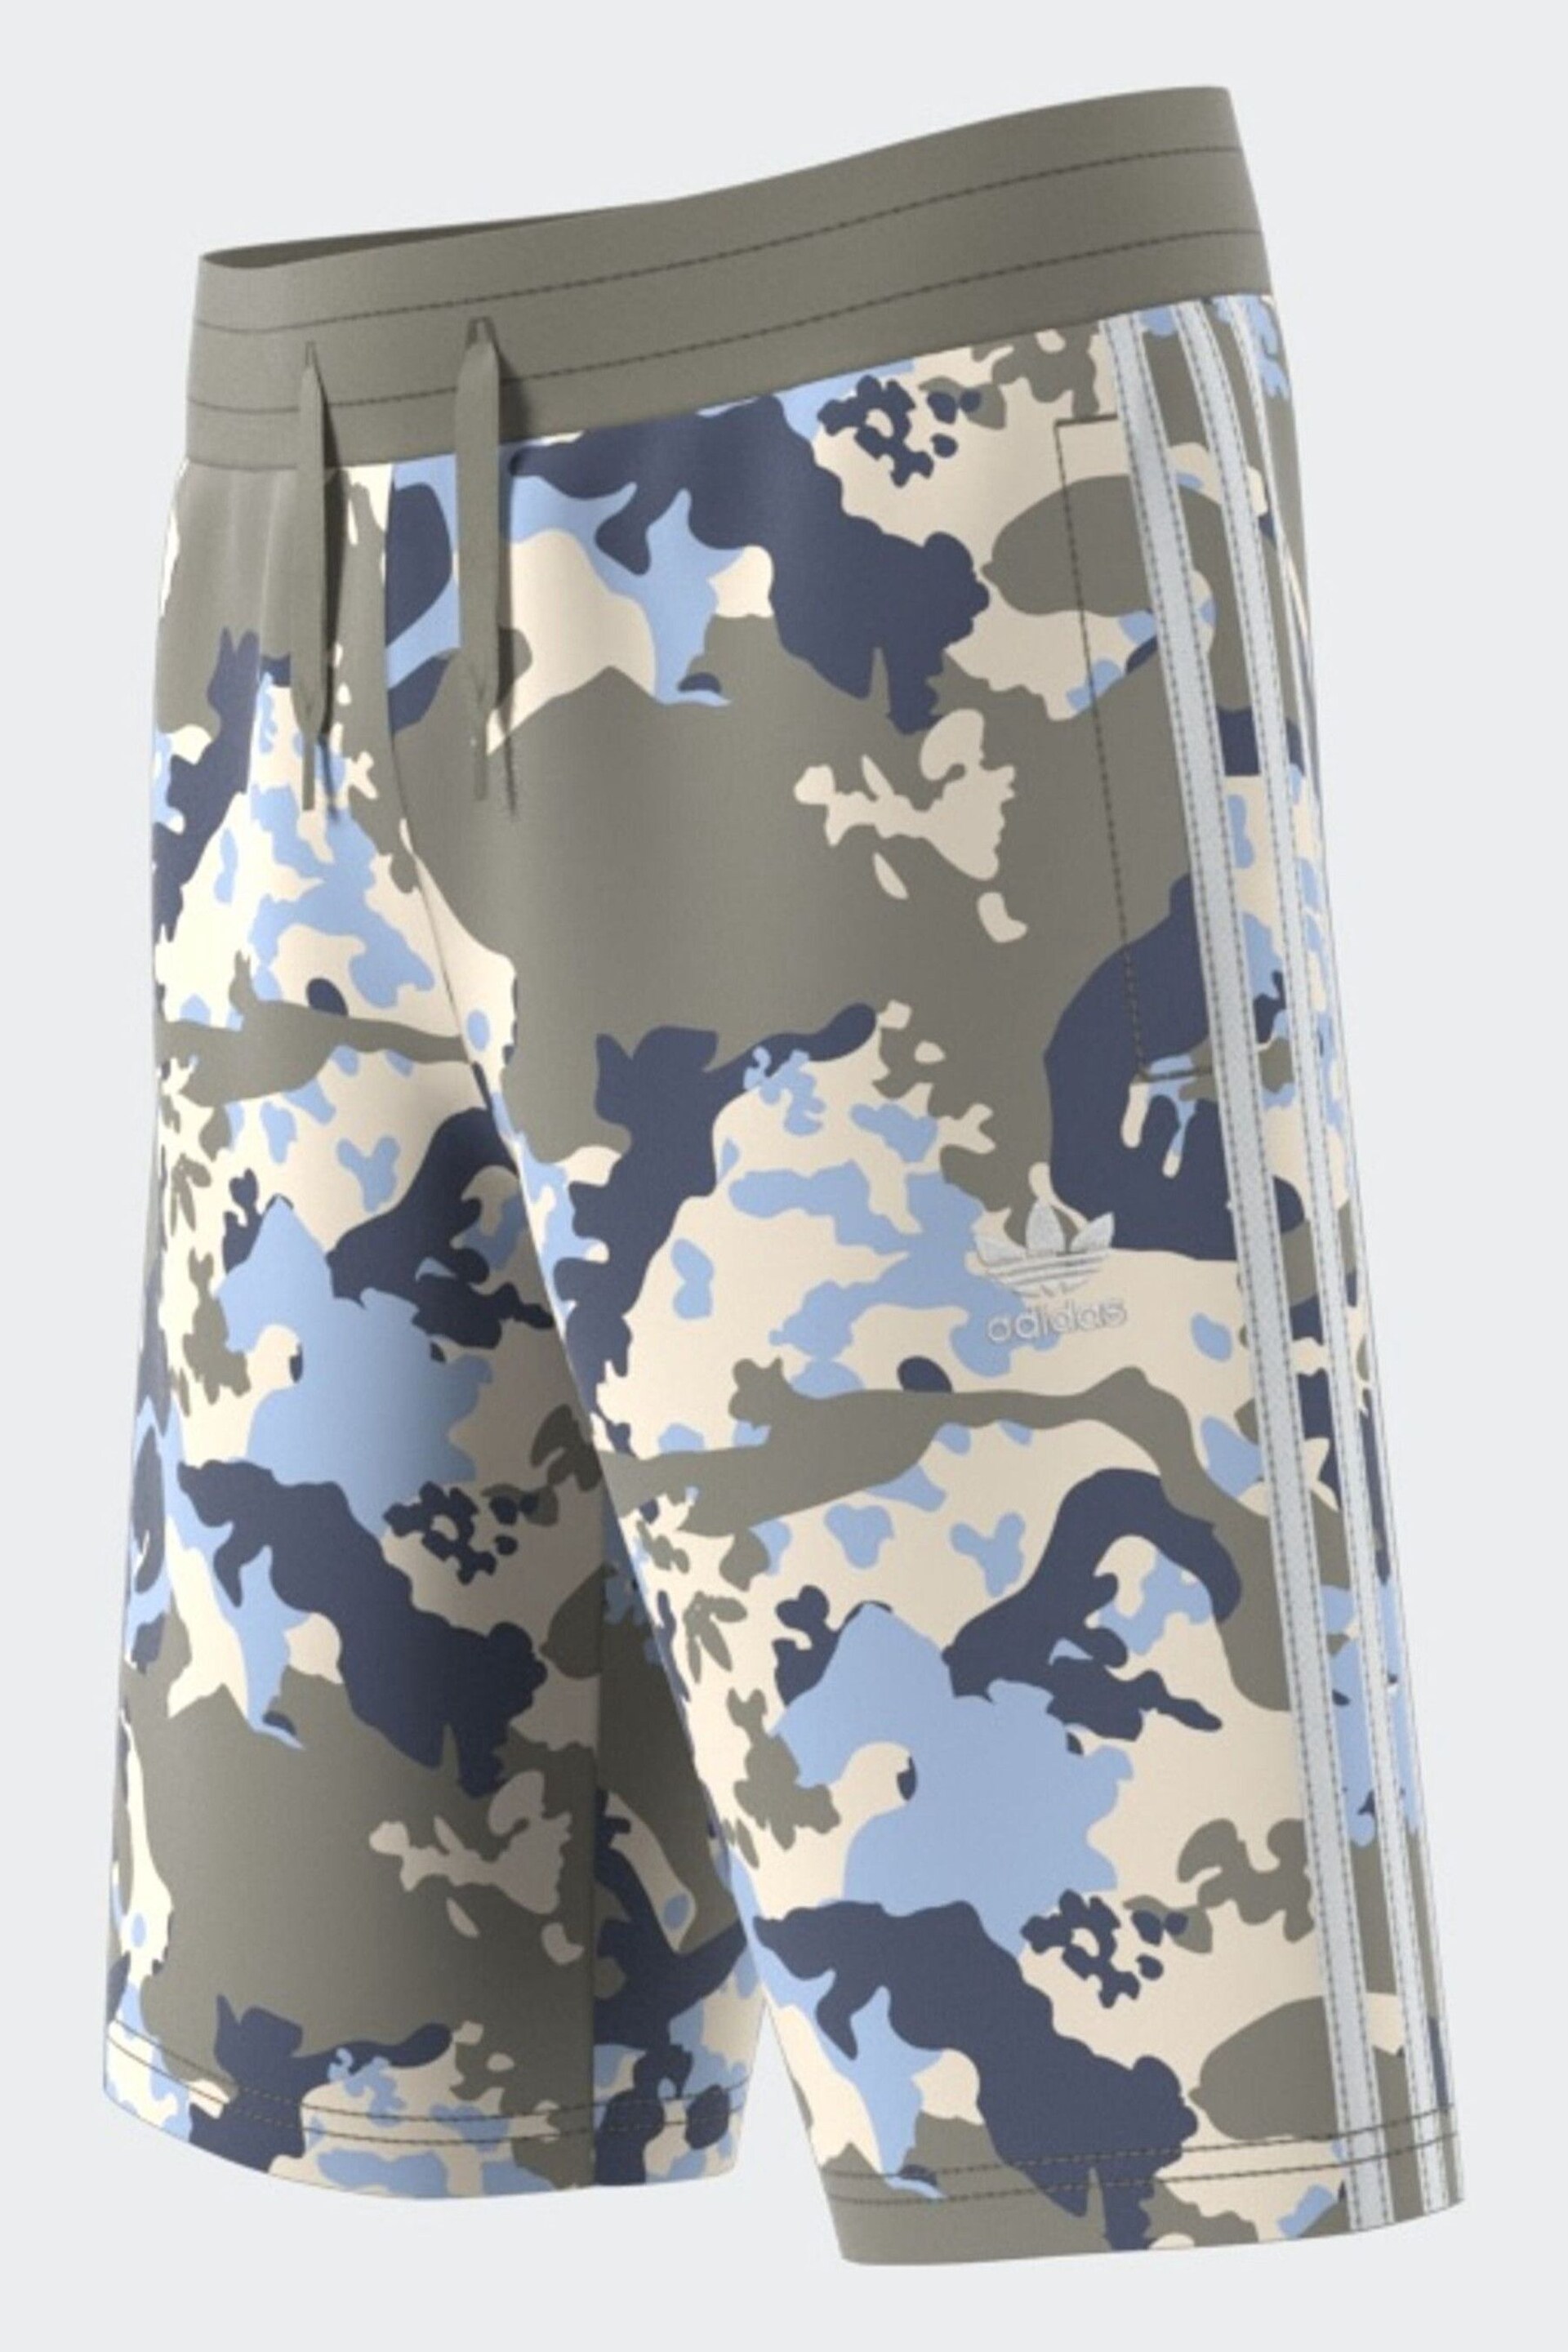 adidas Originals Grey/Blue Camo Shorts - Image 5 of 11